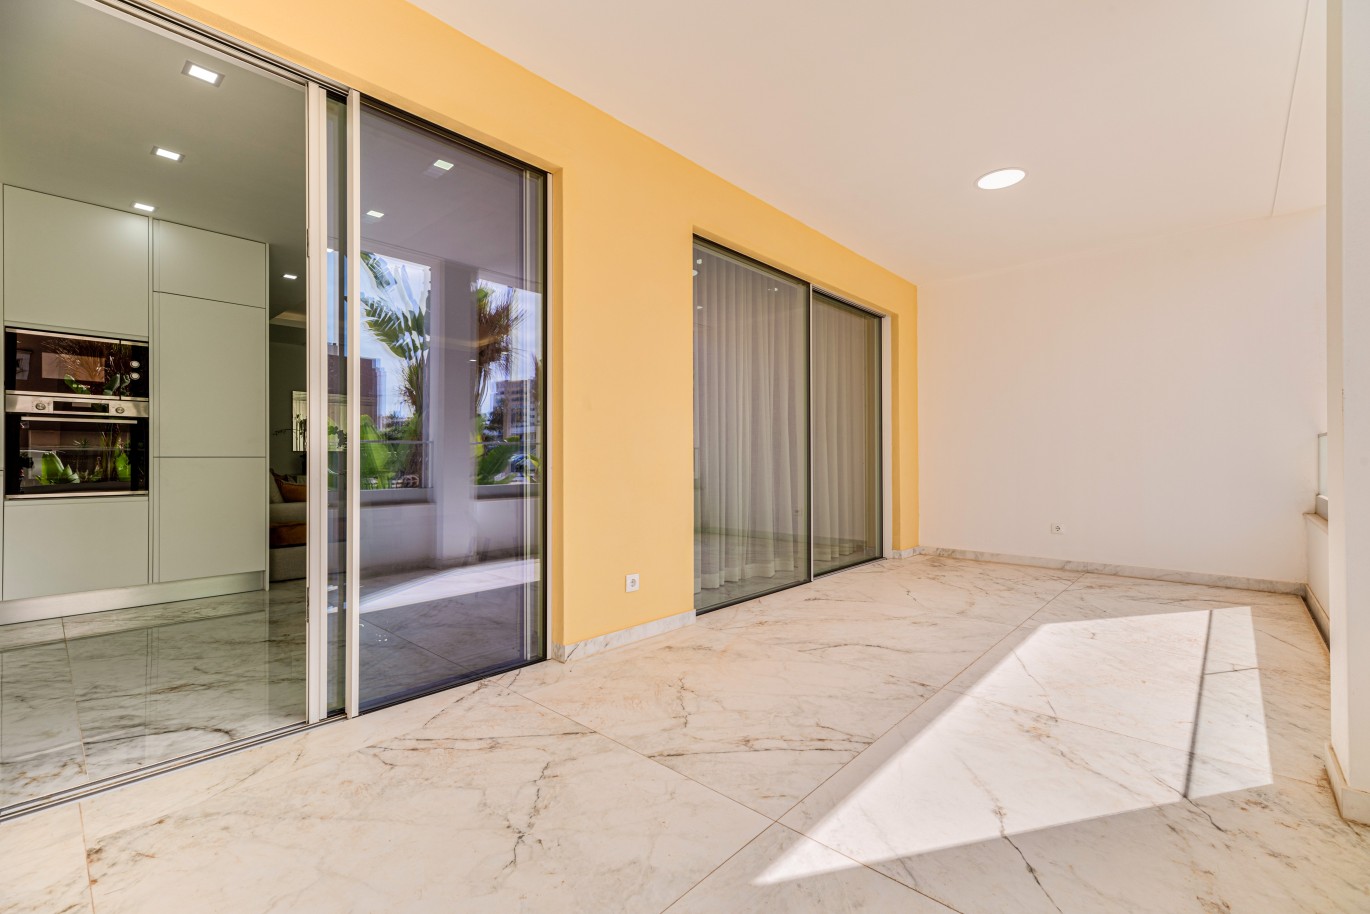 Verkauf einer Wohnung im Bau, mit Terrasse, Lagos, Algarve, Portugal_238134